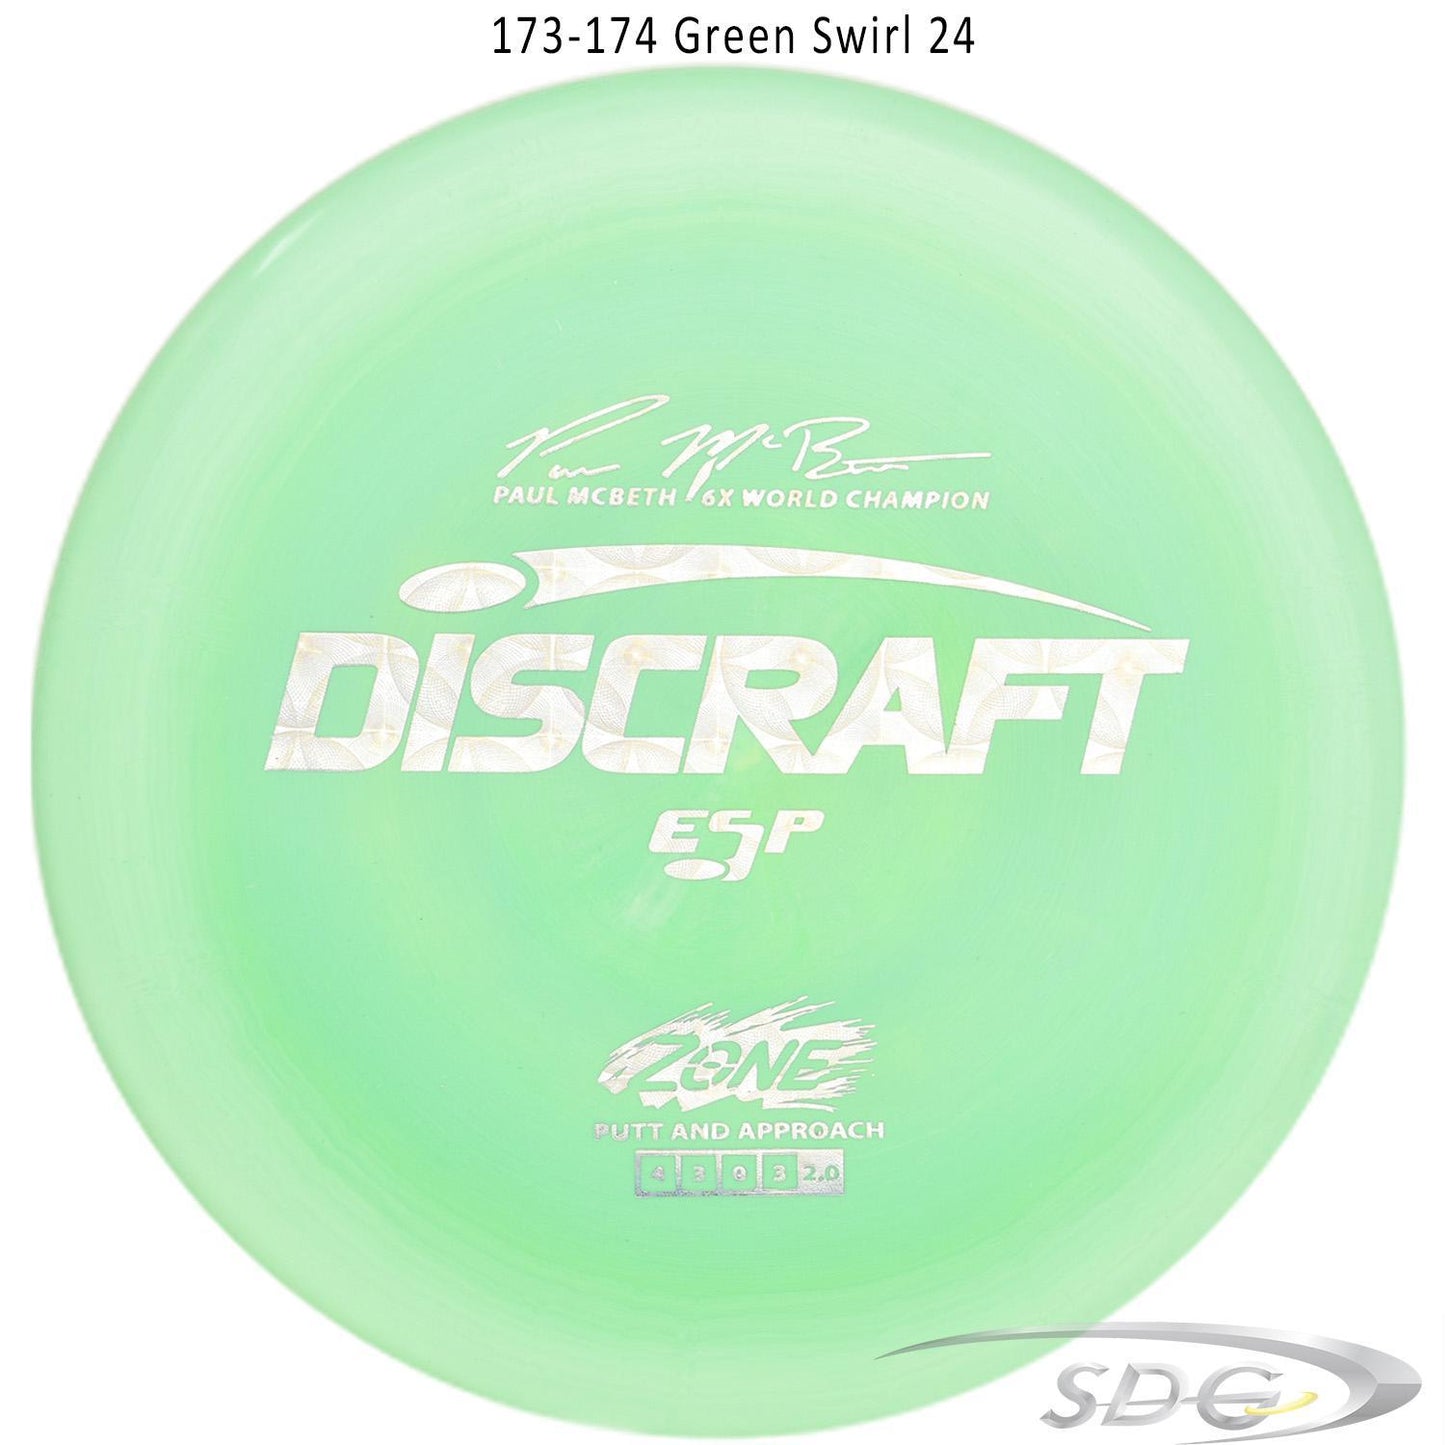 discraft-esp-zone-6x-paul-mcbeth-signature-series-disc-golf-putter 173-174 Green Swirl 24